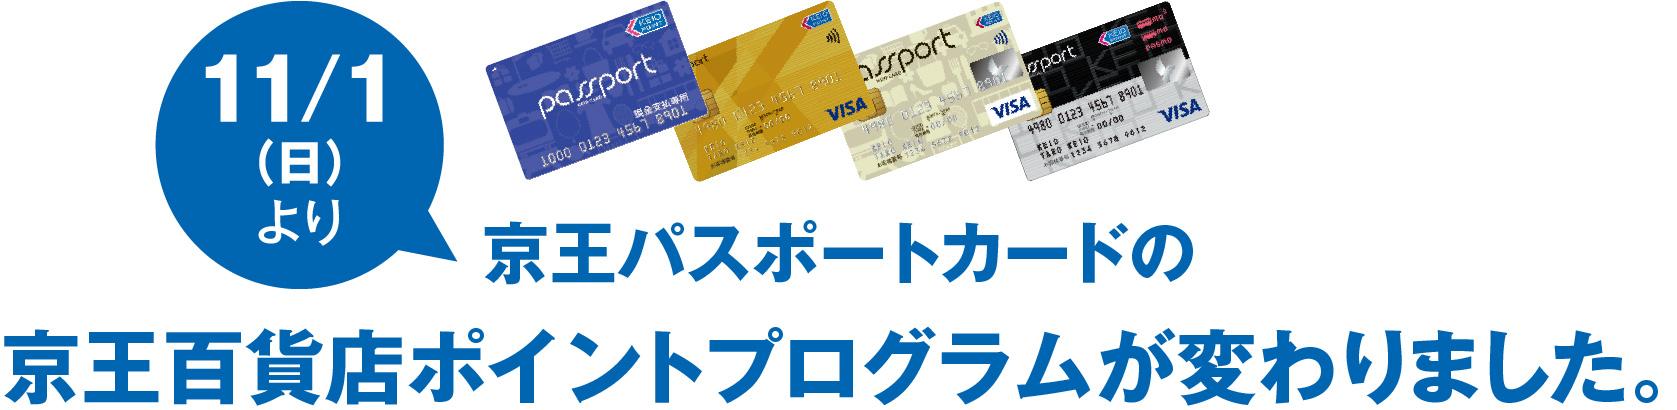 京王パスポートカードの京王百貨店ポイントプログラムが変わりました。｜京王百貨店 新宿店